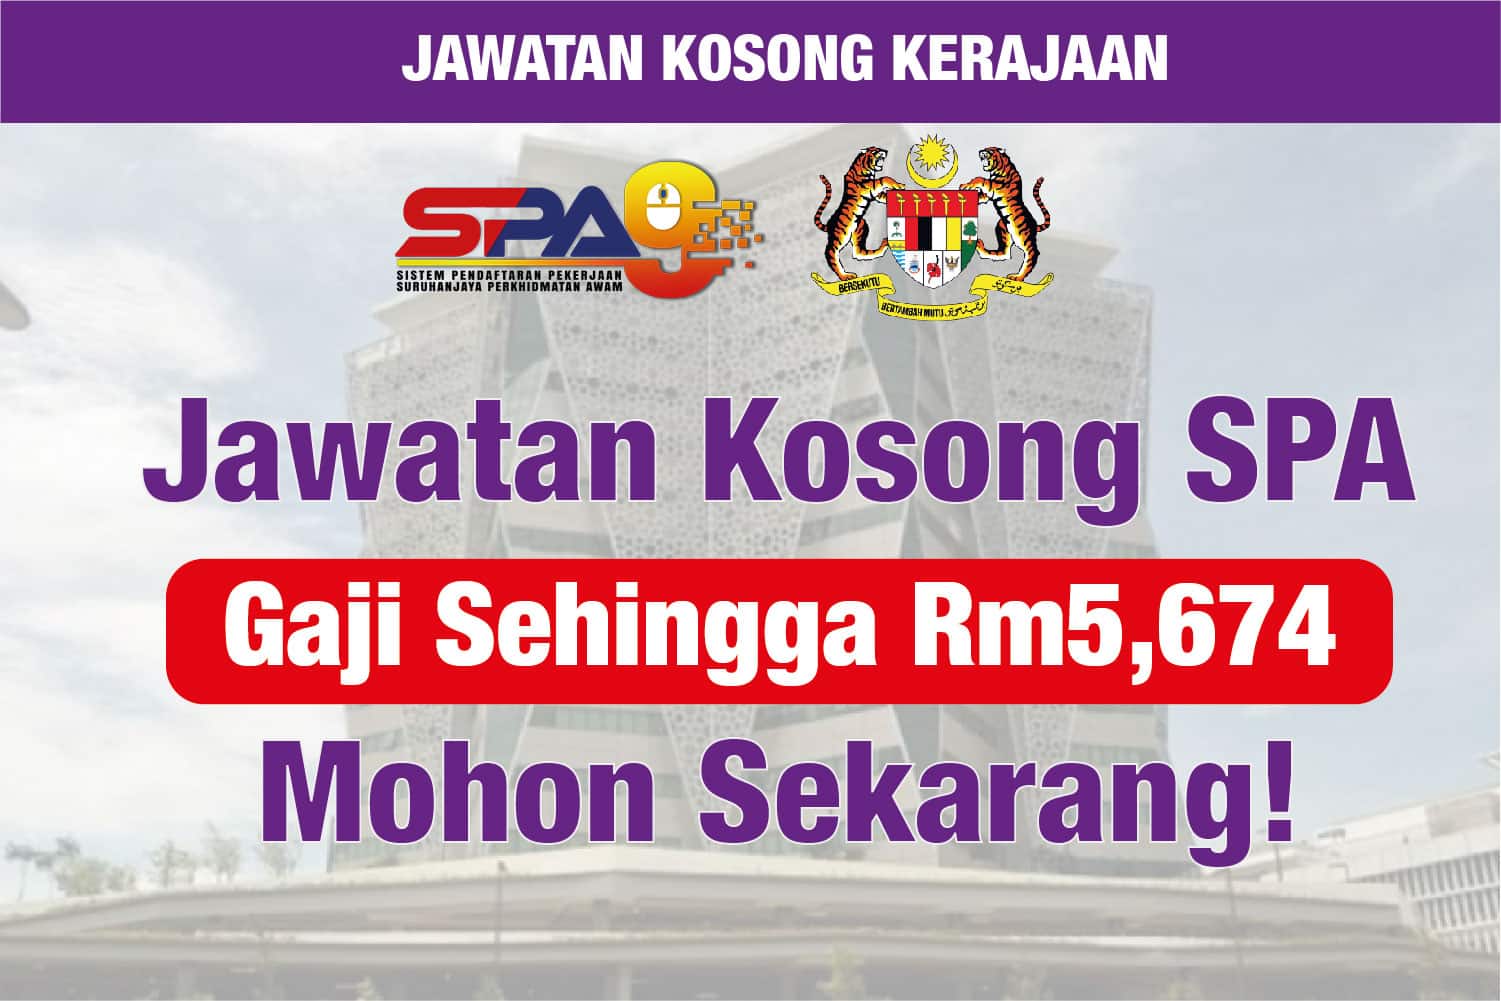 Jawatan kosong SPA : Mohon sekarang, gaji sehingga RM5,674